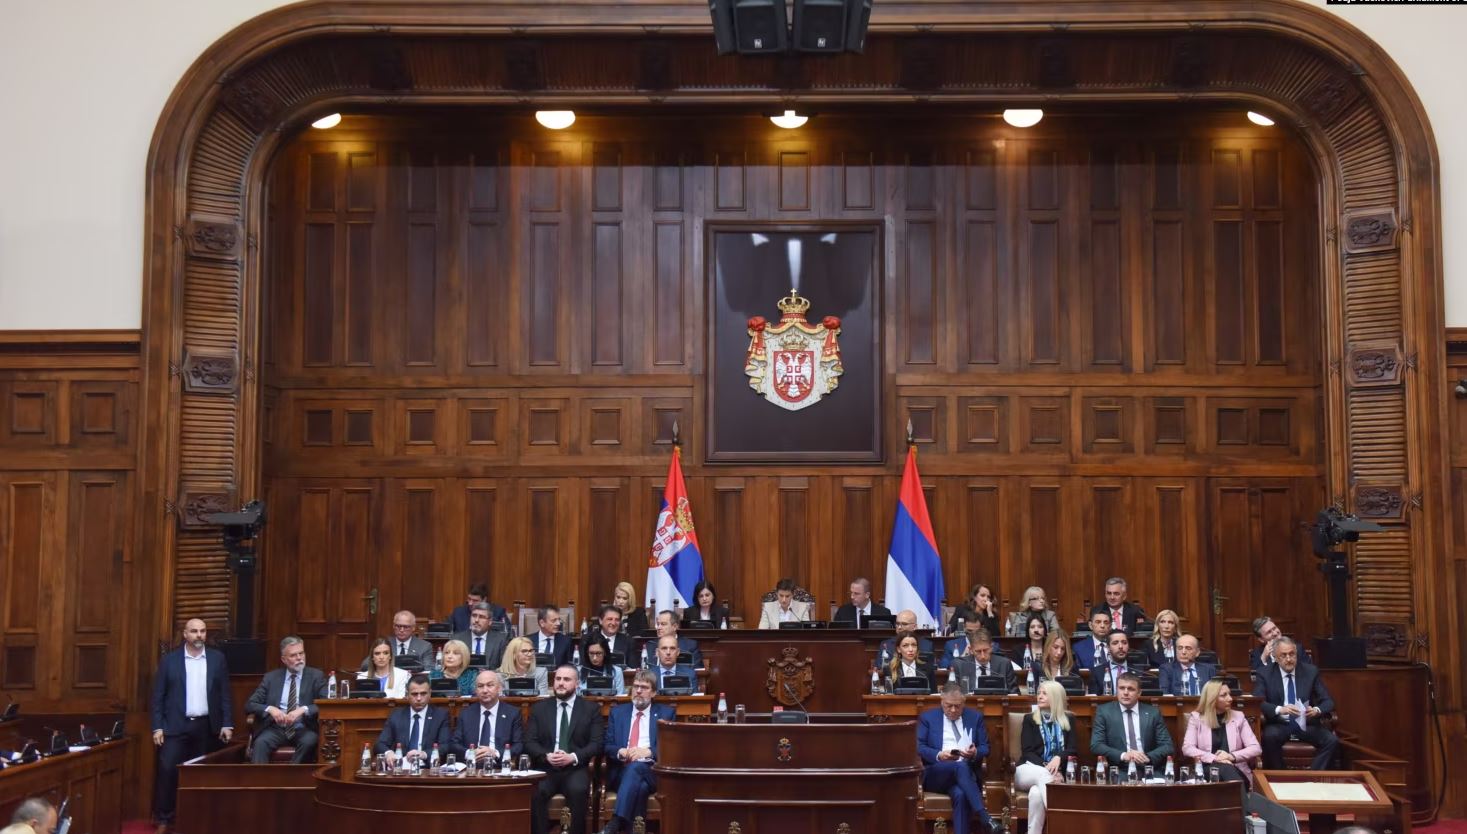 Zgjidhet Qeveria e re e Serbisë  Vulin  non grata  zv kryeministër